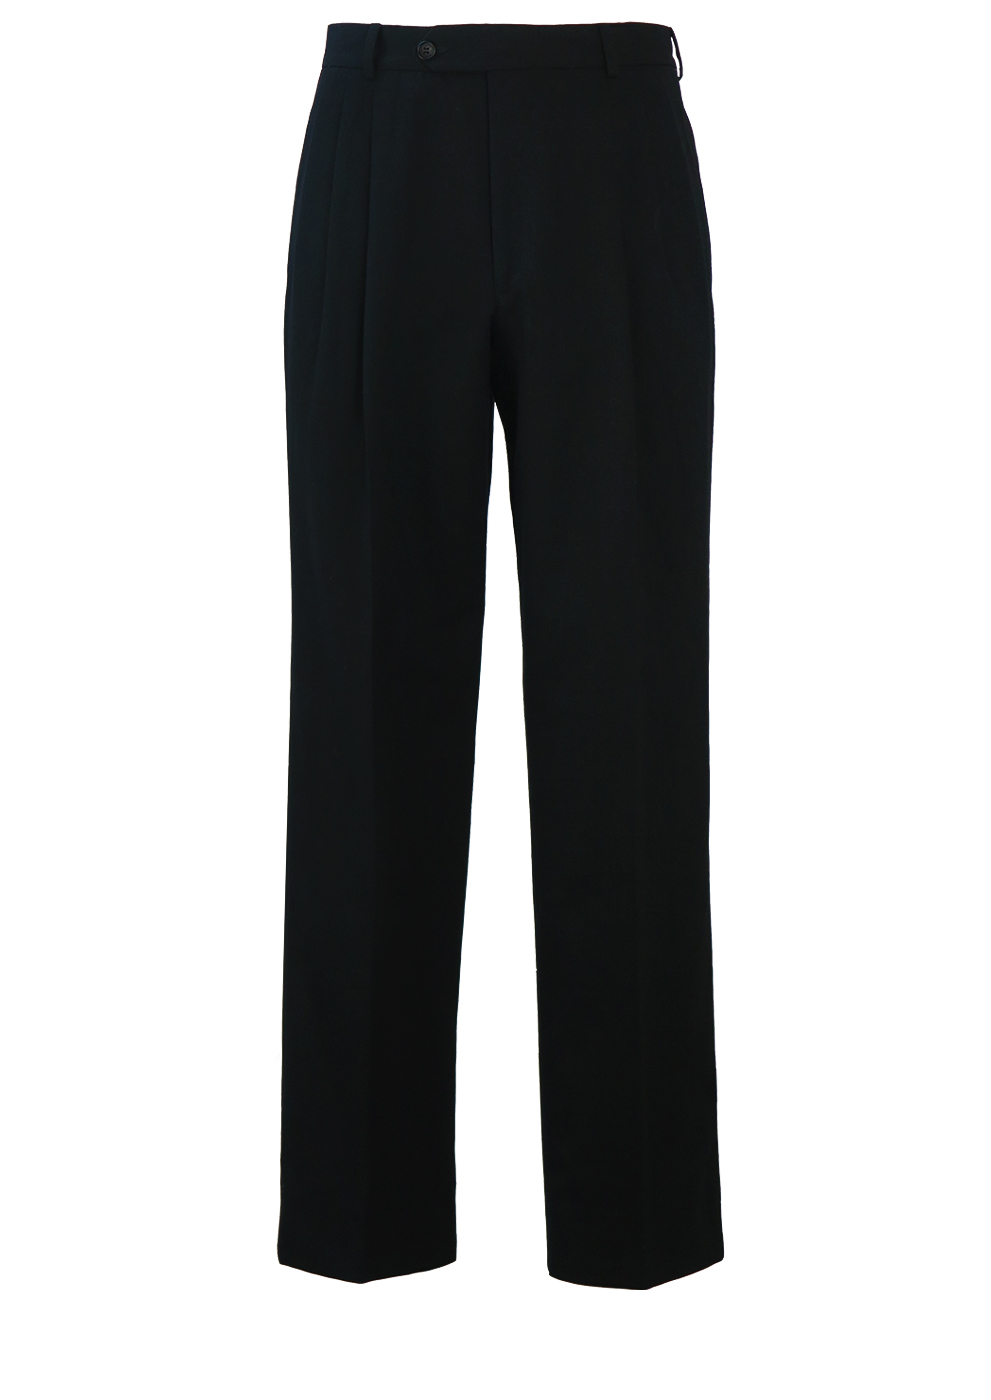 Black Pleat Front Wool Trousers - W30